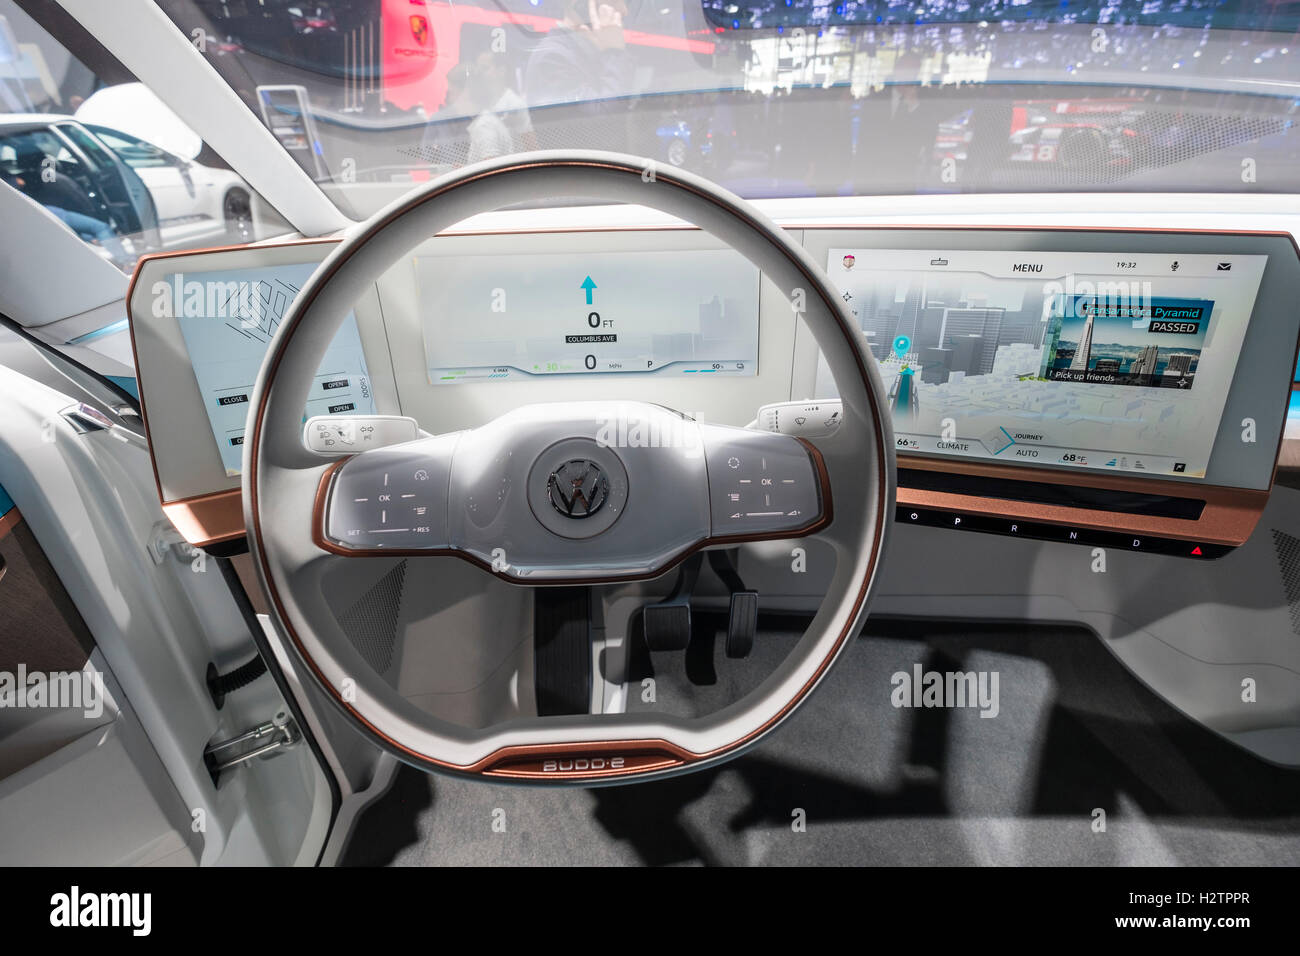 Détail de la planche de bord électronique de Volkswagen, VW Budd.E concept électrique minibus à Paris Motor Show 2016 Banque D'Images